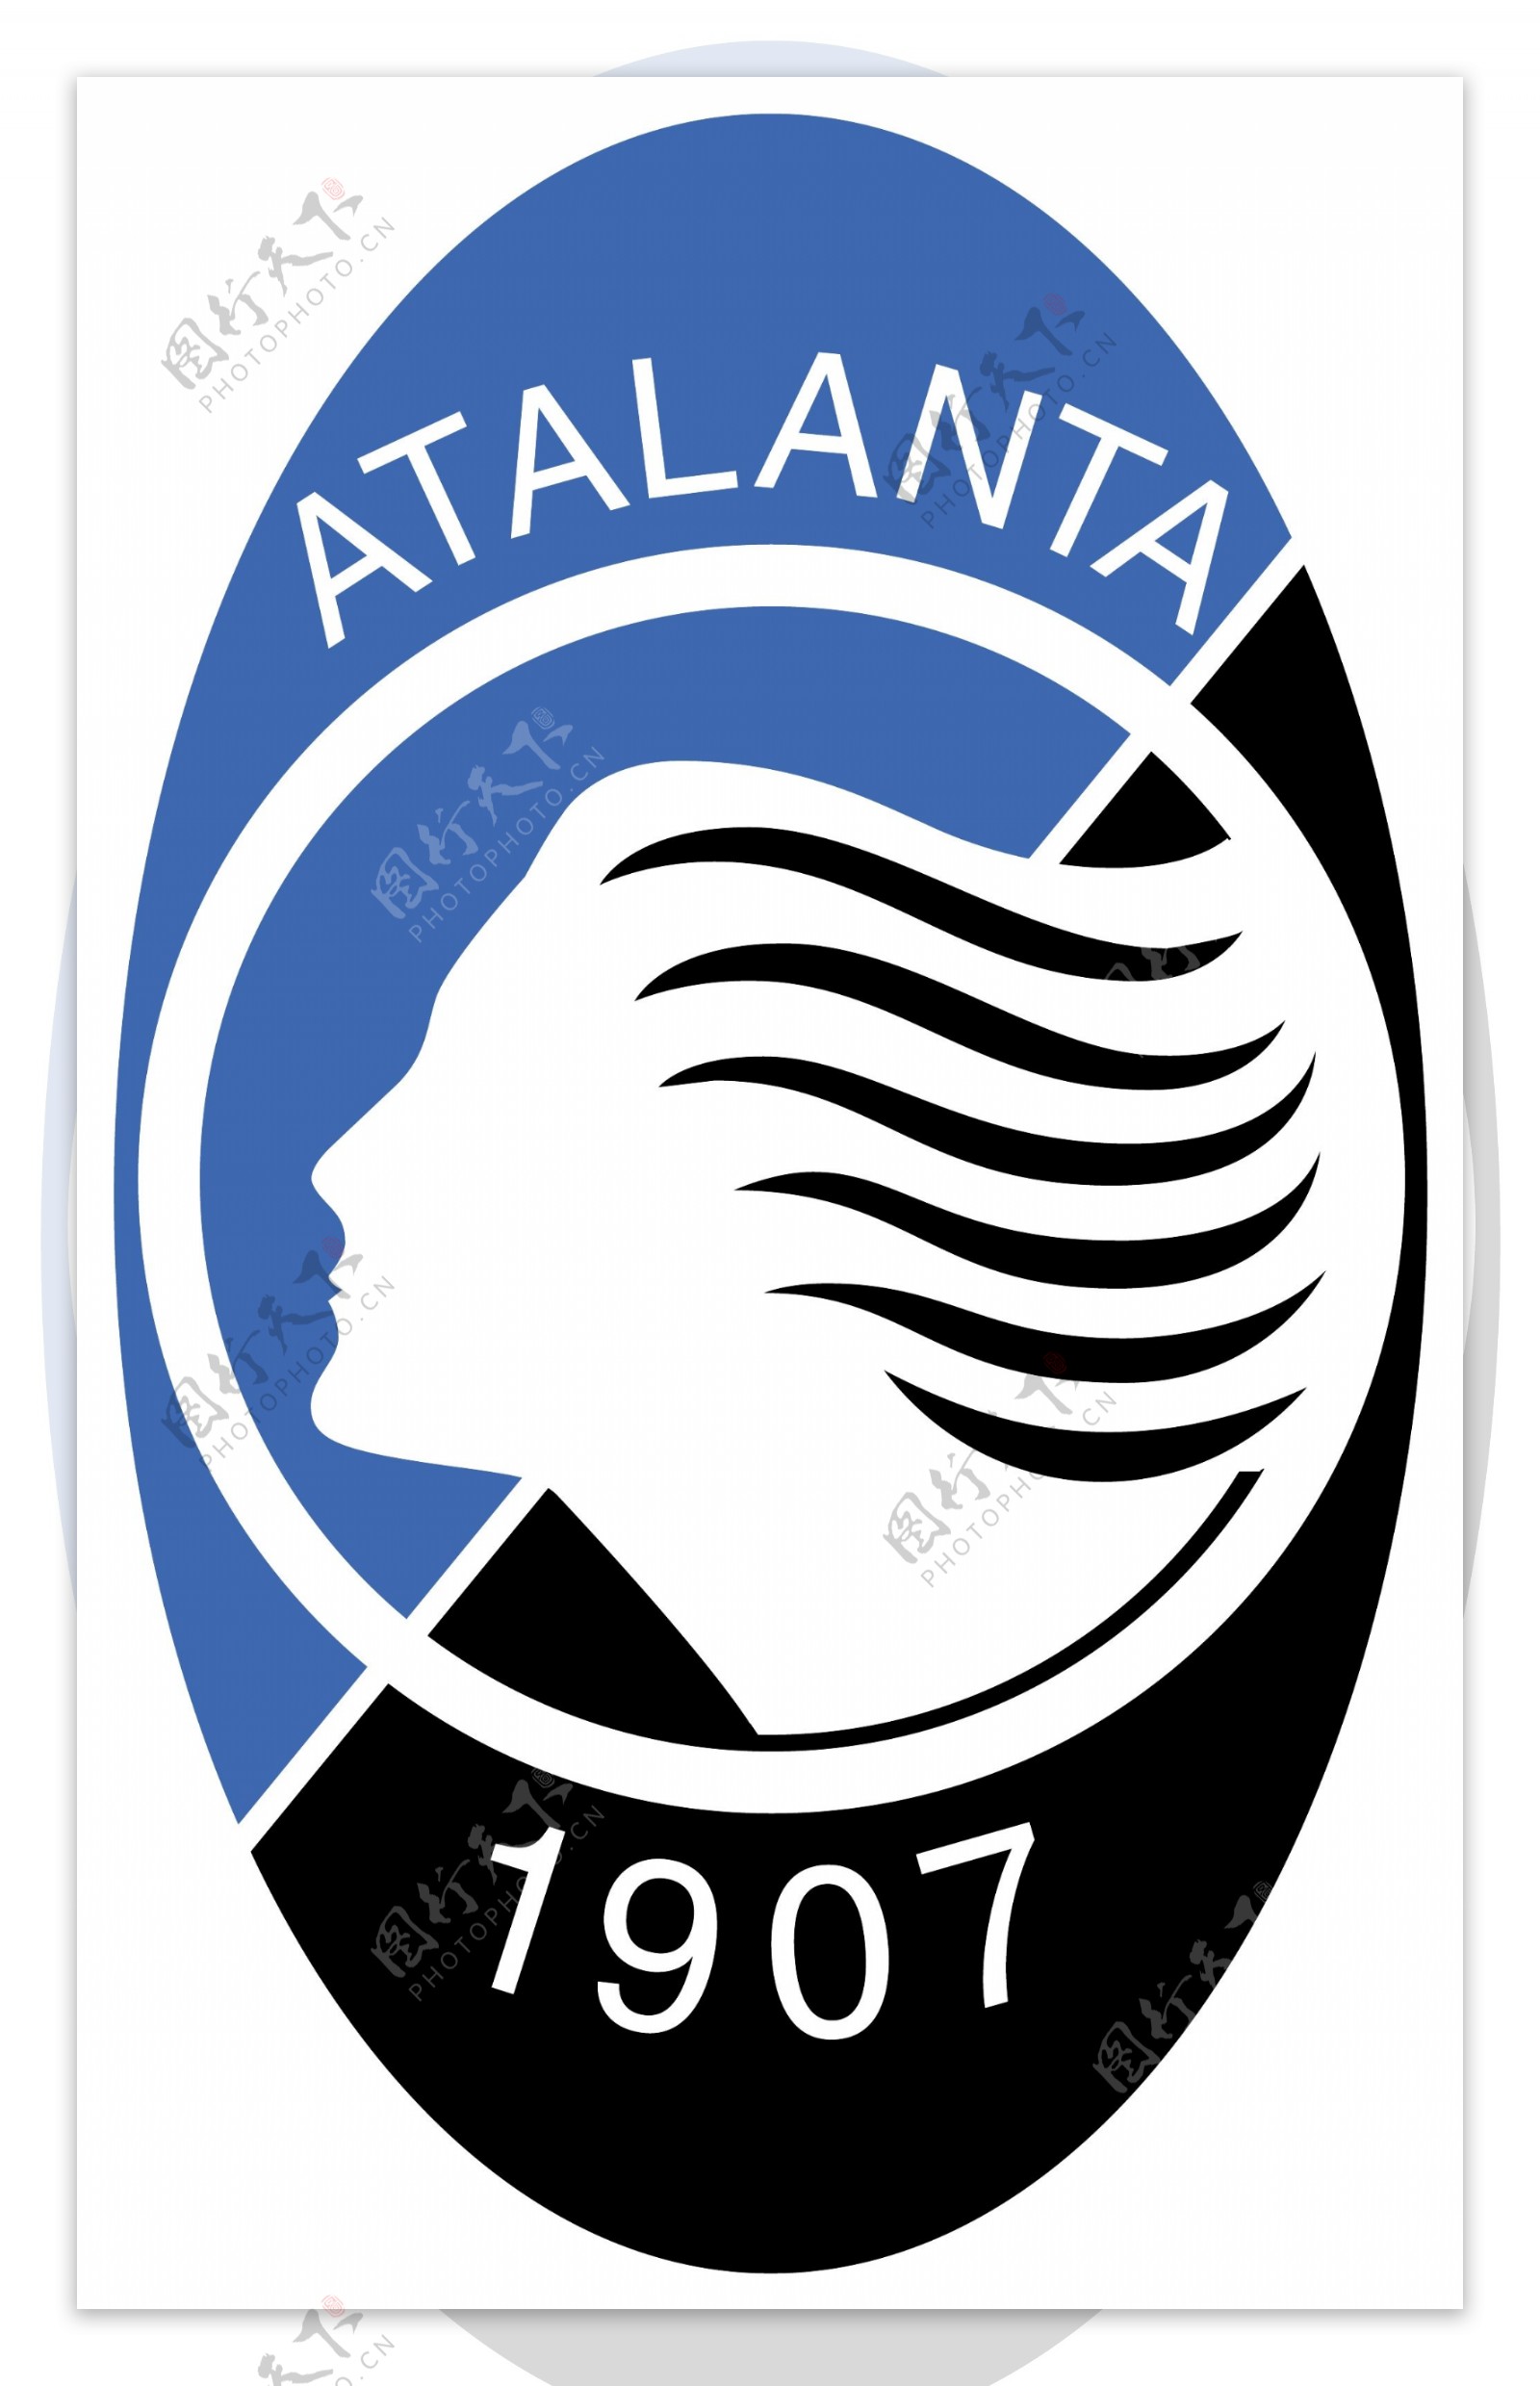 亚特兰大足球俱乐部徽标图片